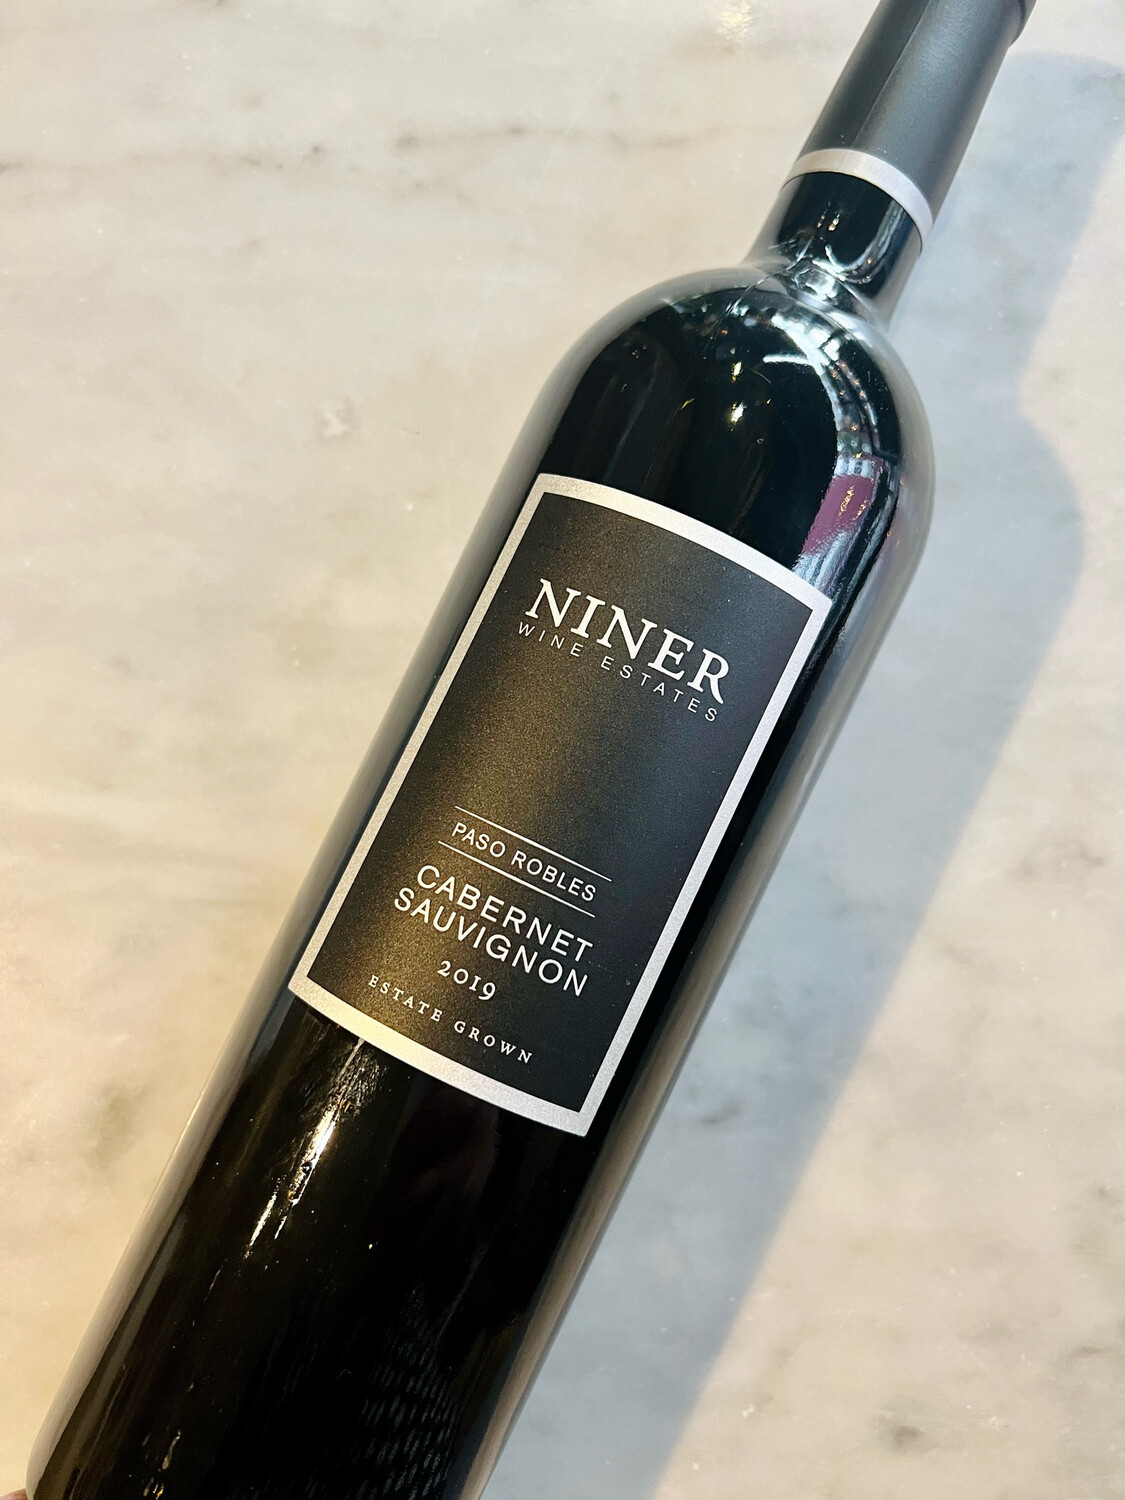 Niner Wine Estate “Estate Grown” Cabernet Sauvignon, Paso Robles 2019